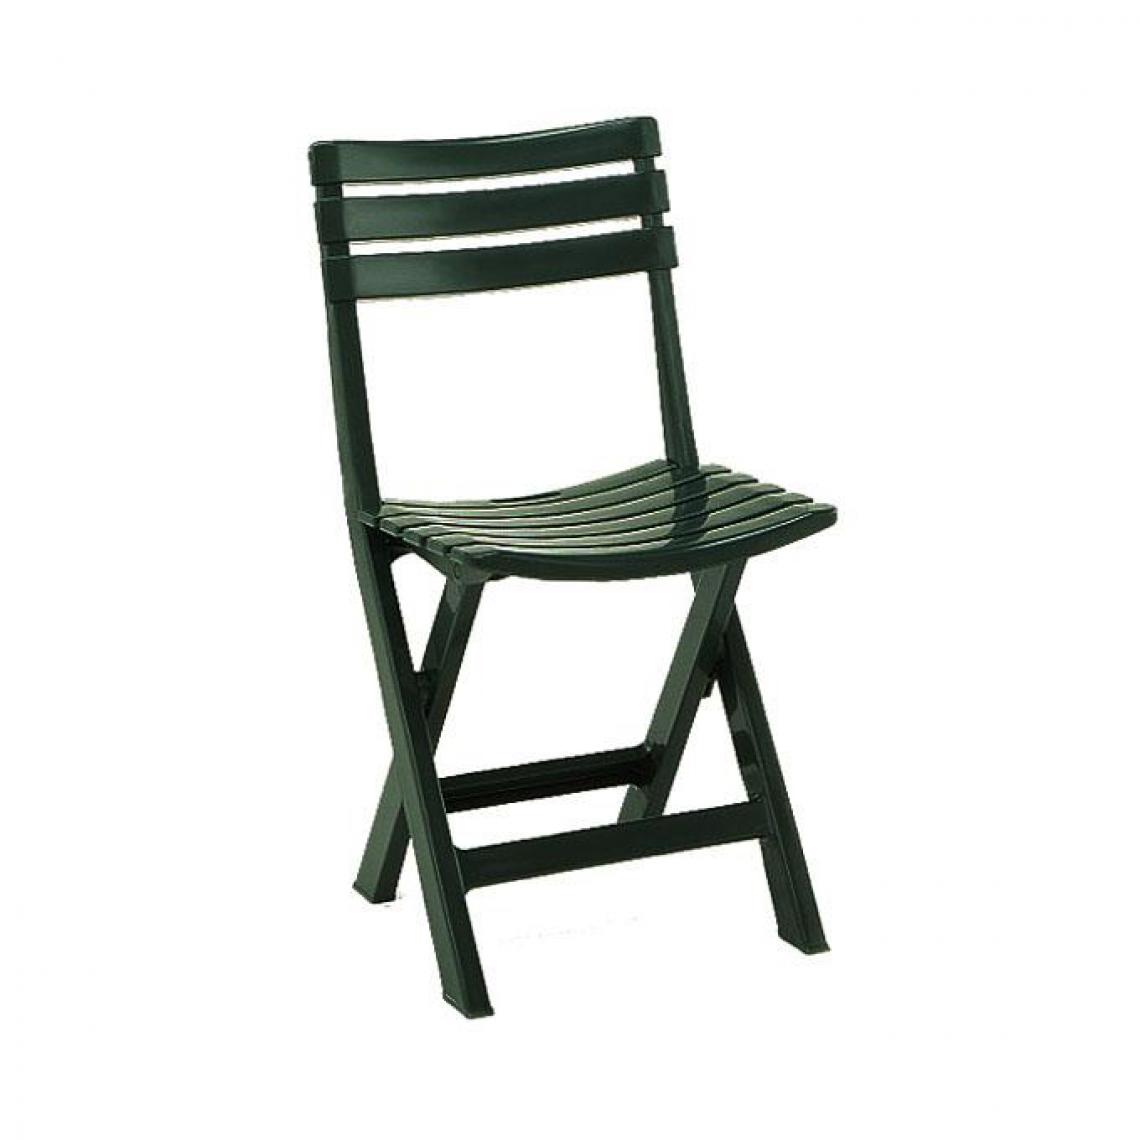 Alter - Chaise d'extérieur pliante, Made in Italy, 44 x 41 x 78 cm, Couleur verte - Chaises